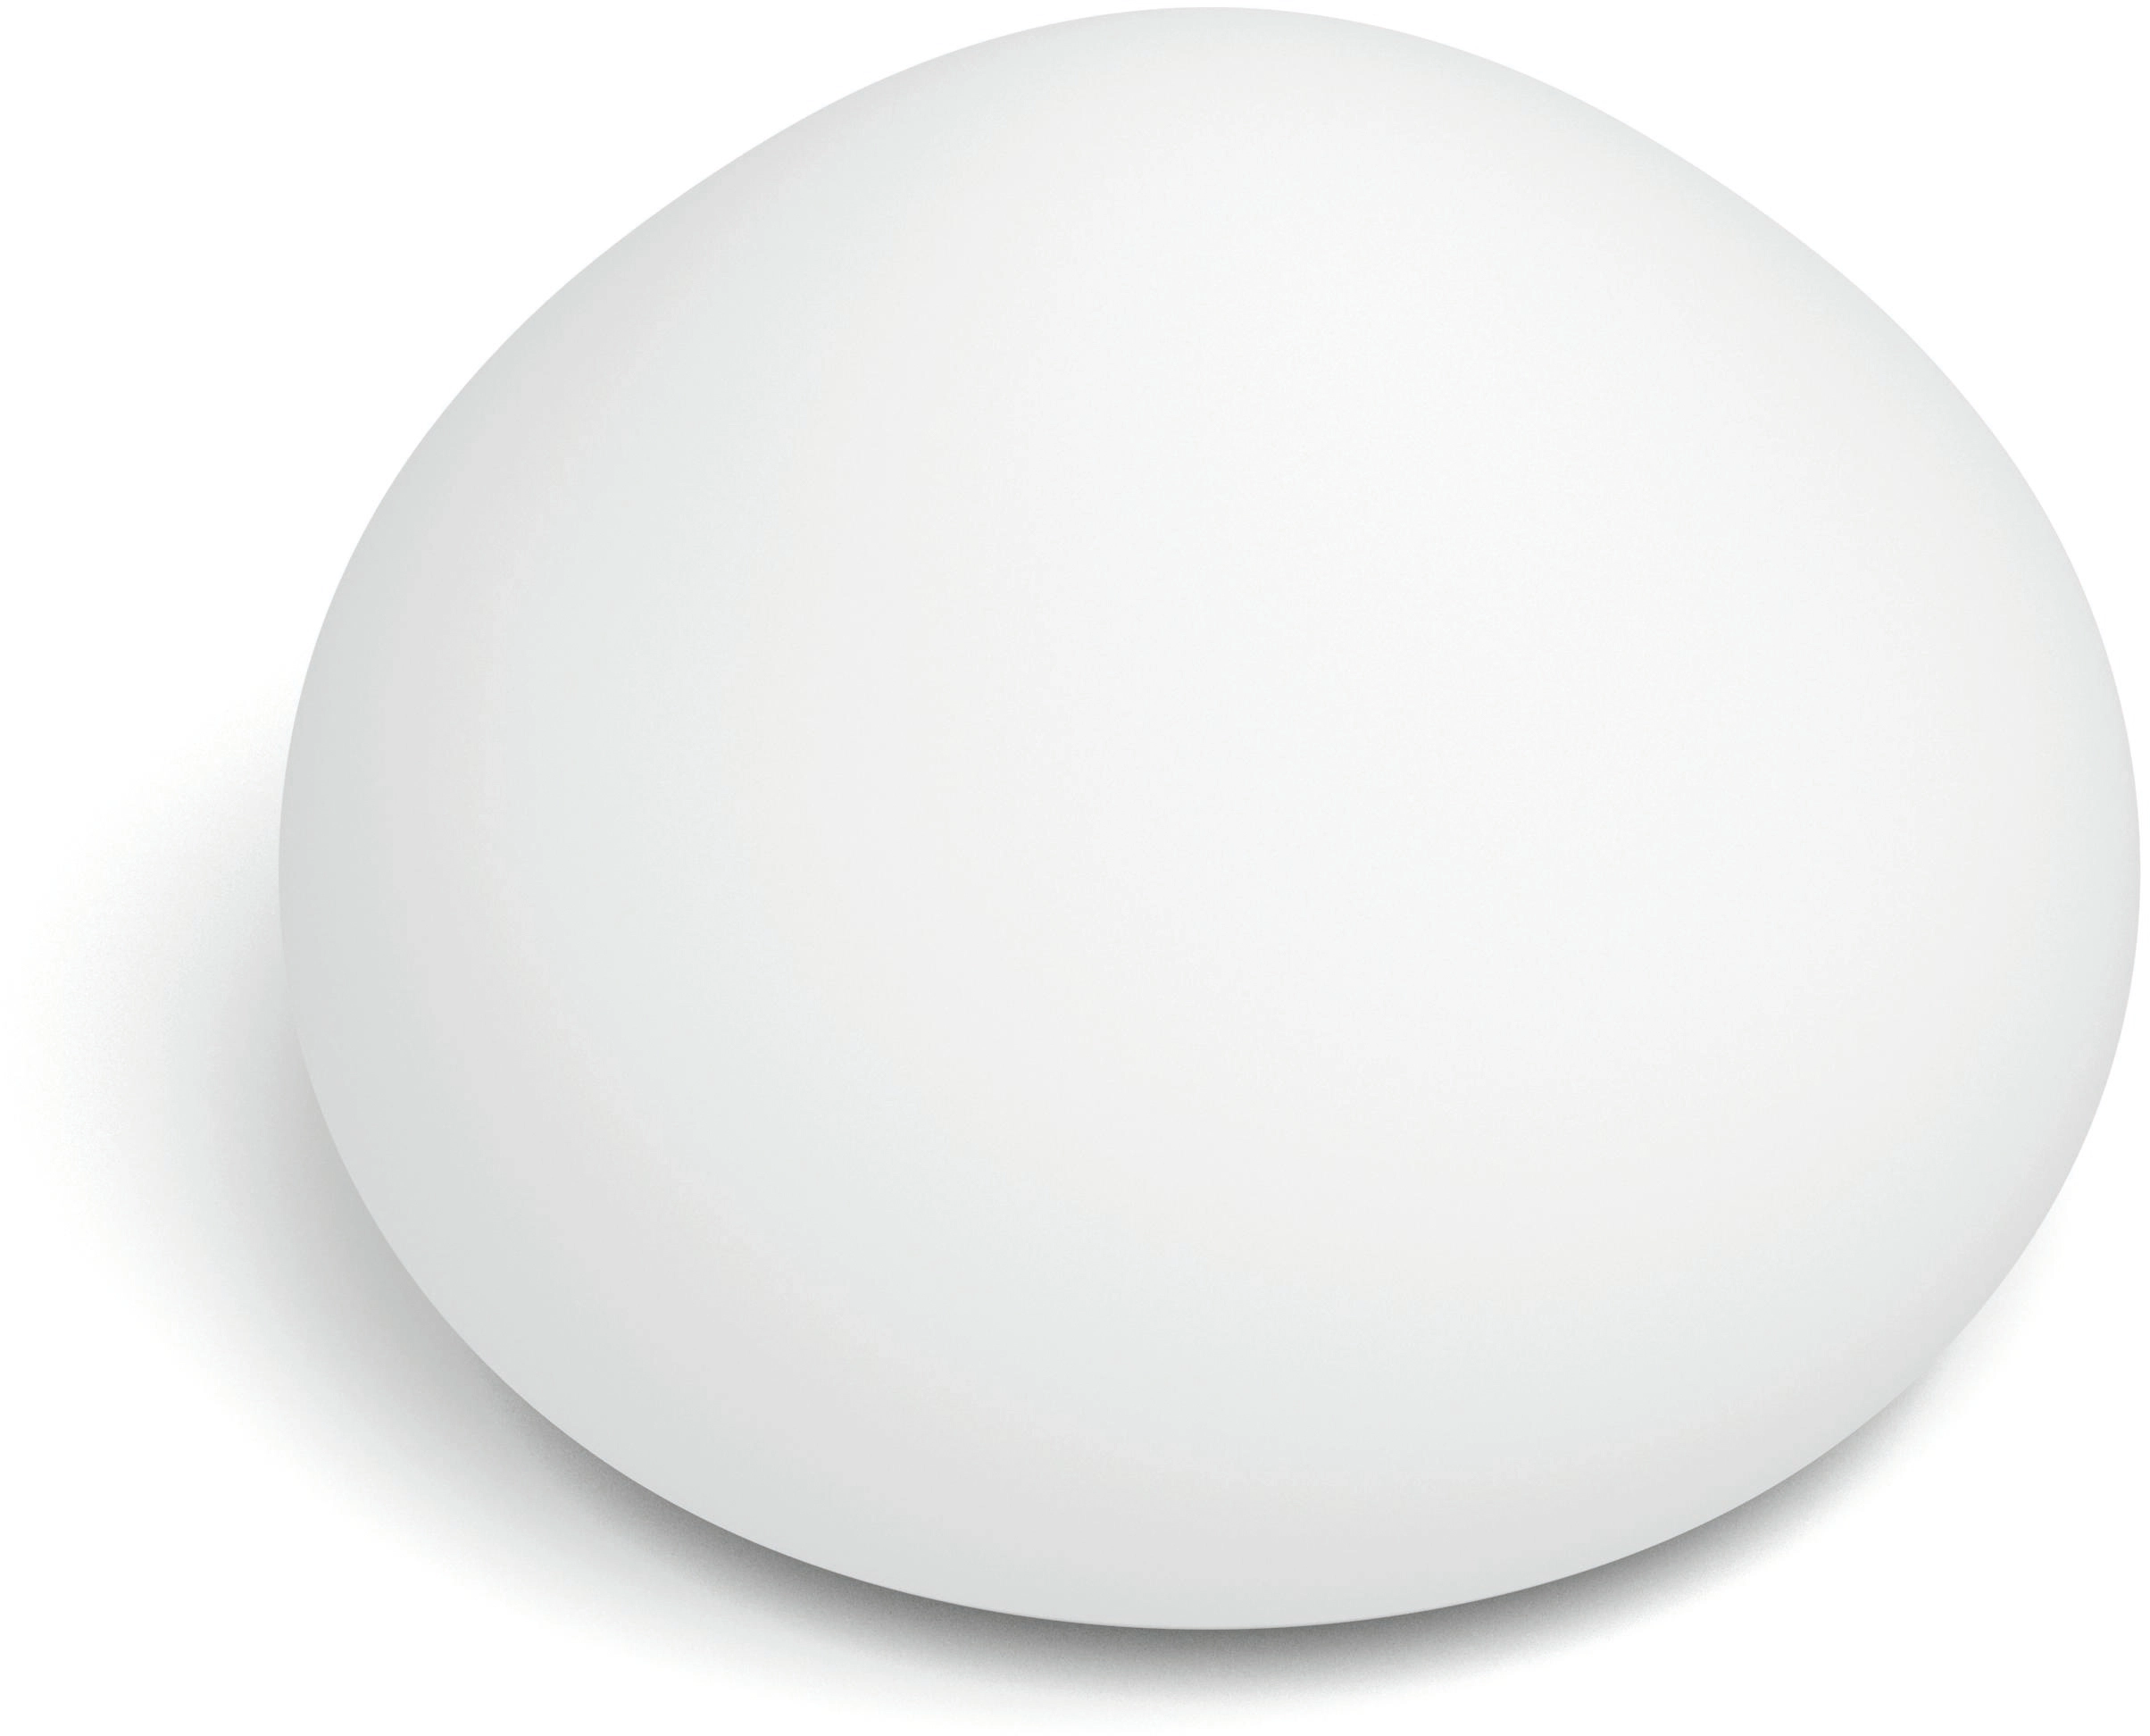 OBI Weiß White 570 Hue lm Philips Ambiance inkl. Wellner kaufen Tischleuchte Dimmer bei